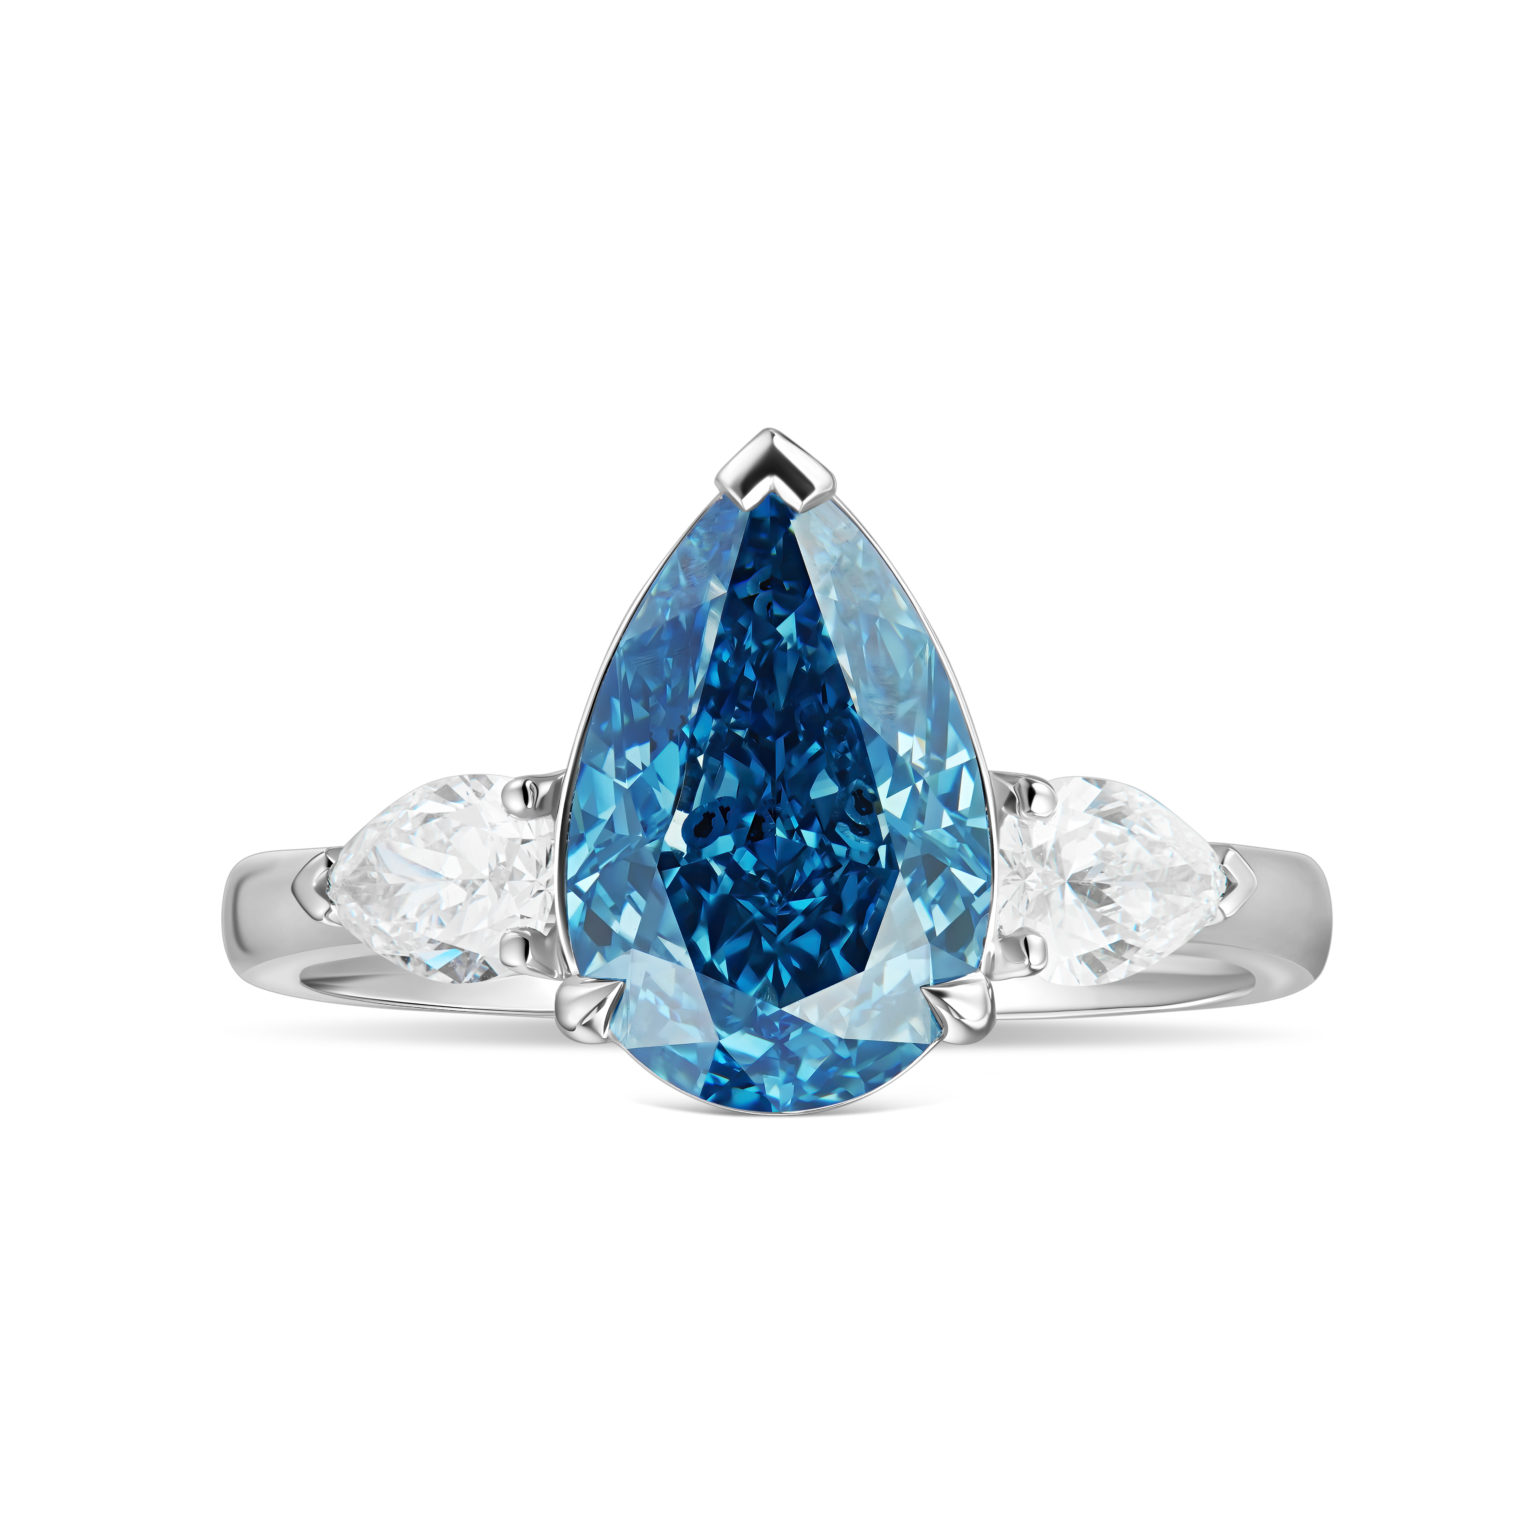 Blue Diamond Ring